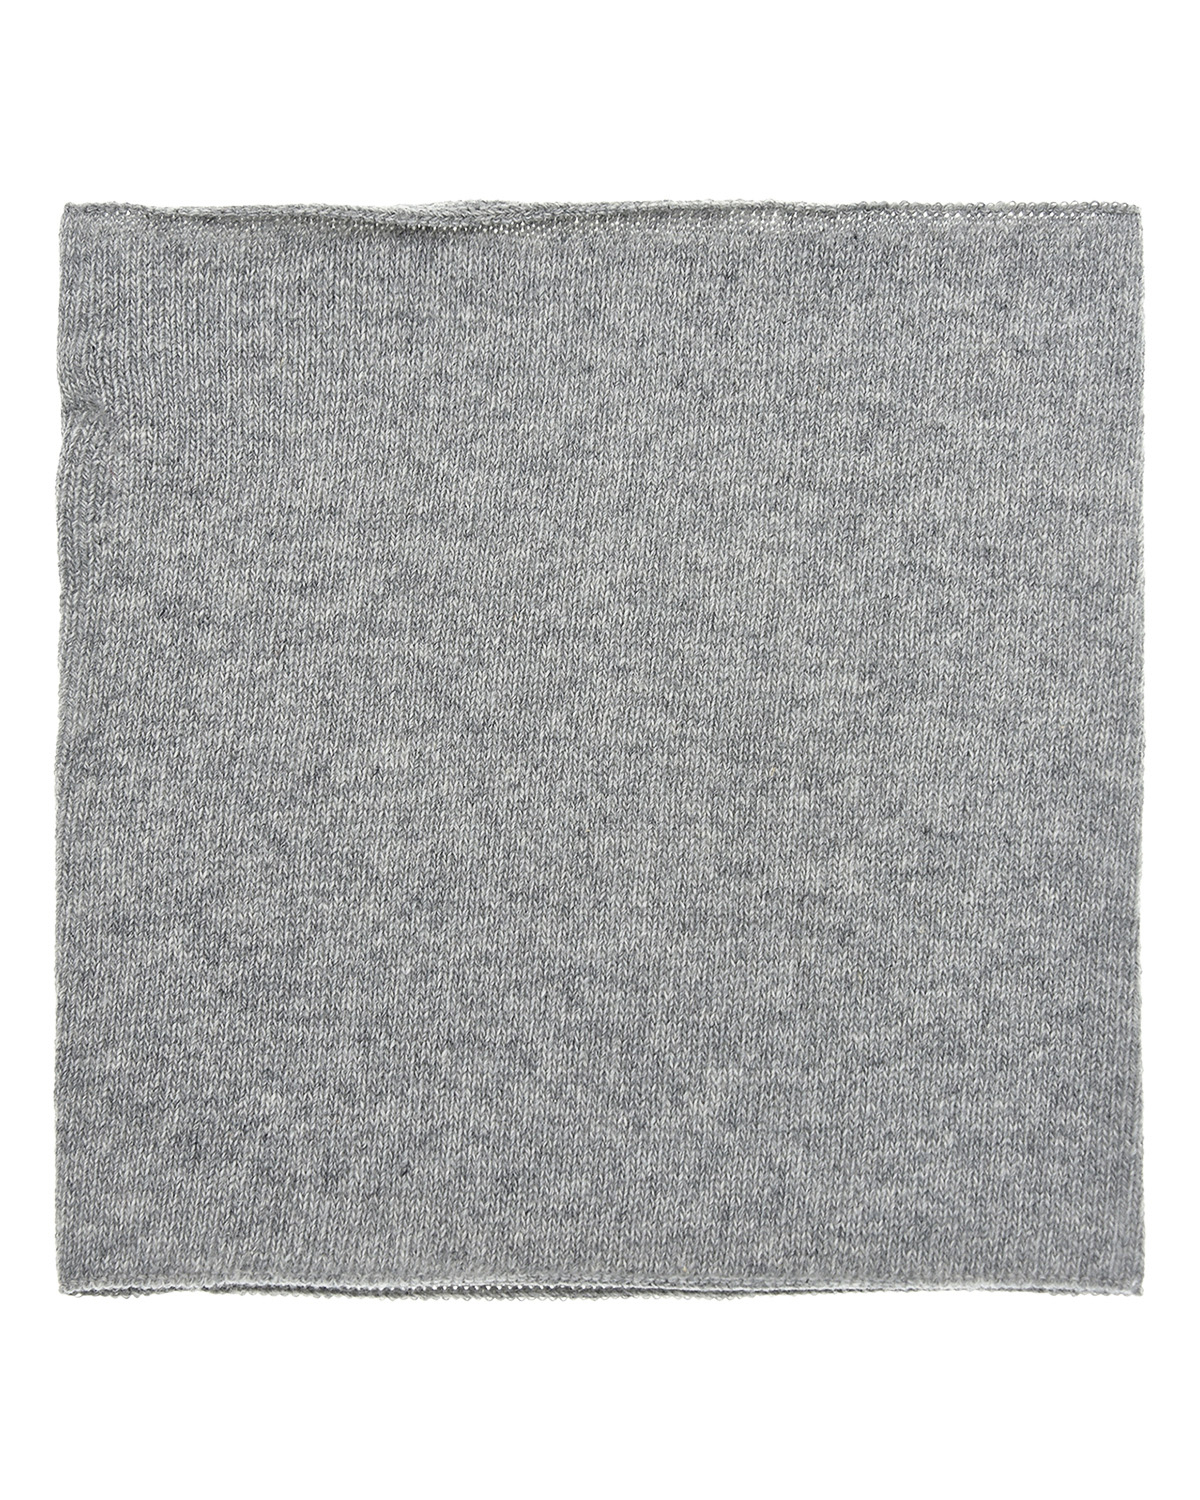 Серый шарф-ворот из шерсти и кашемира, 26x24 см Catya детский, размер unica - фото 2